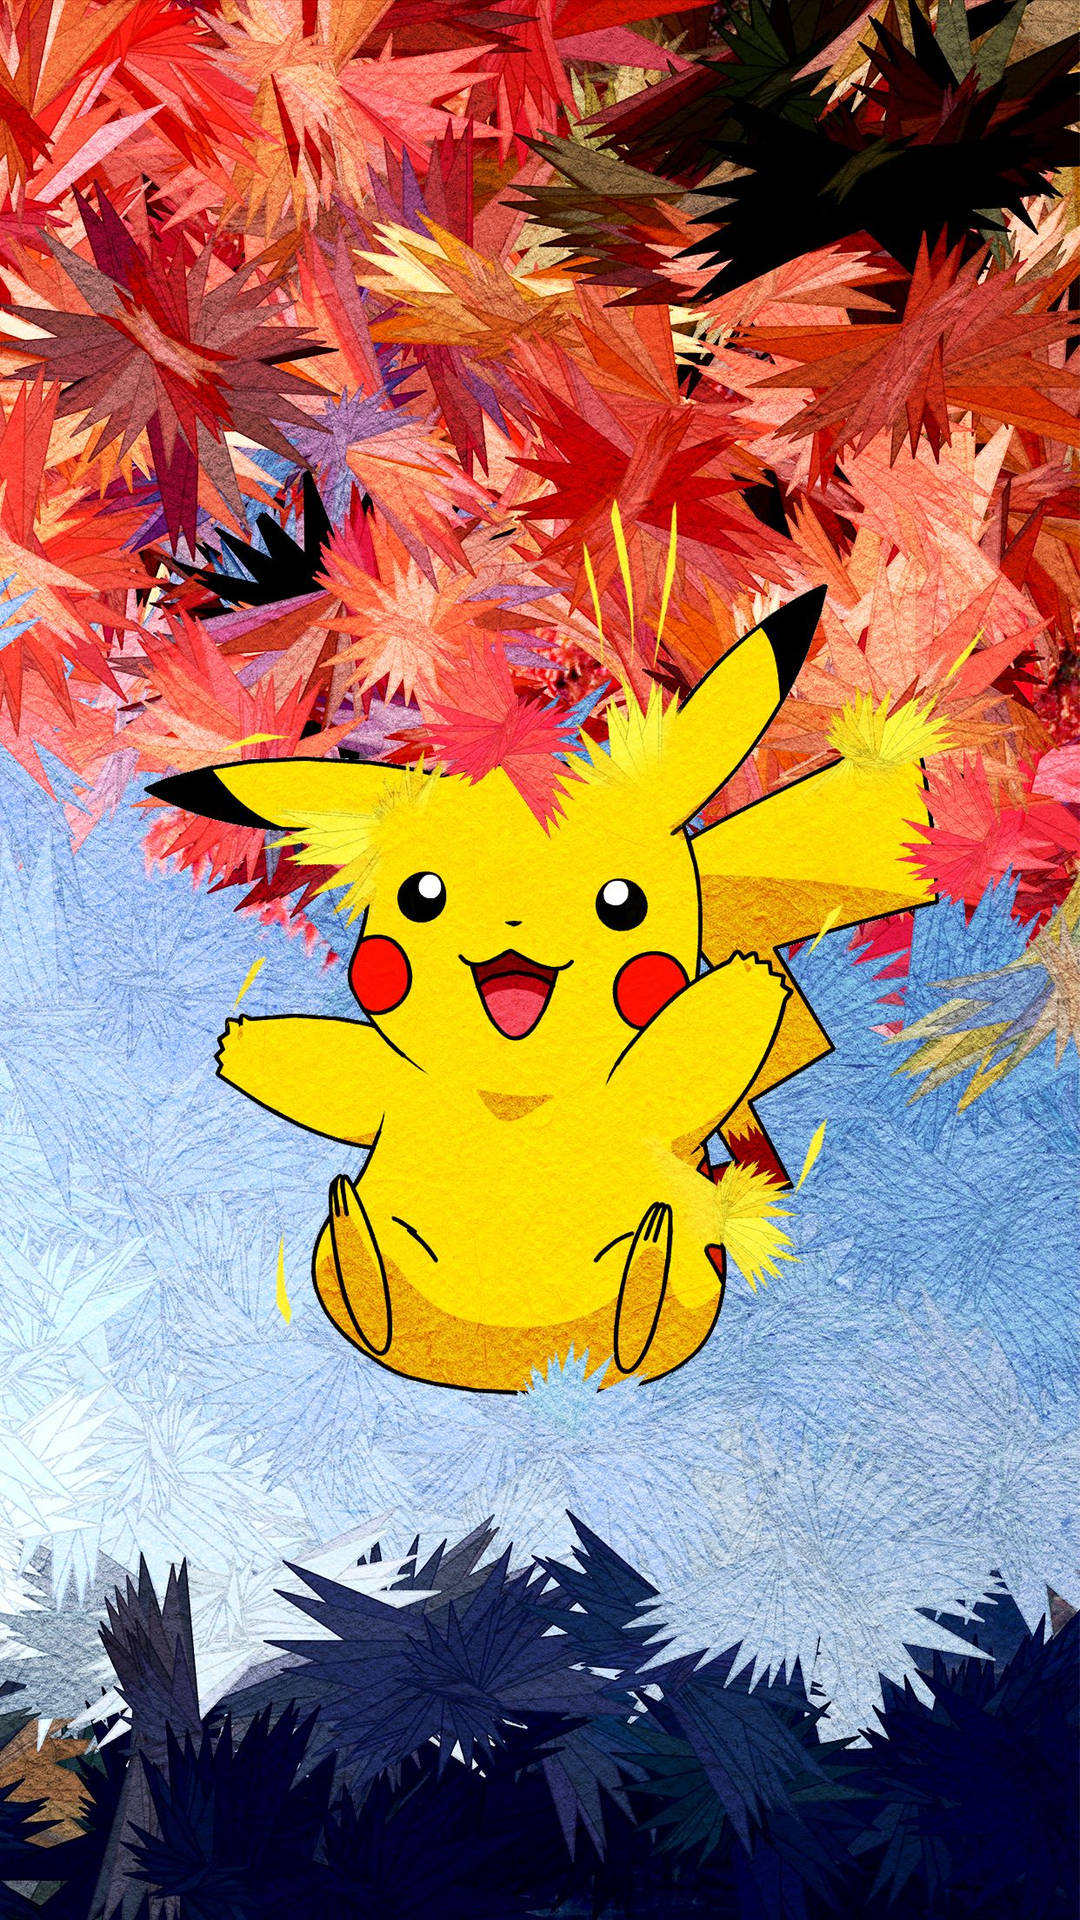 Pikachu 3d Electric Type Pokémon Wallpaper